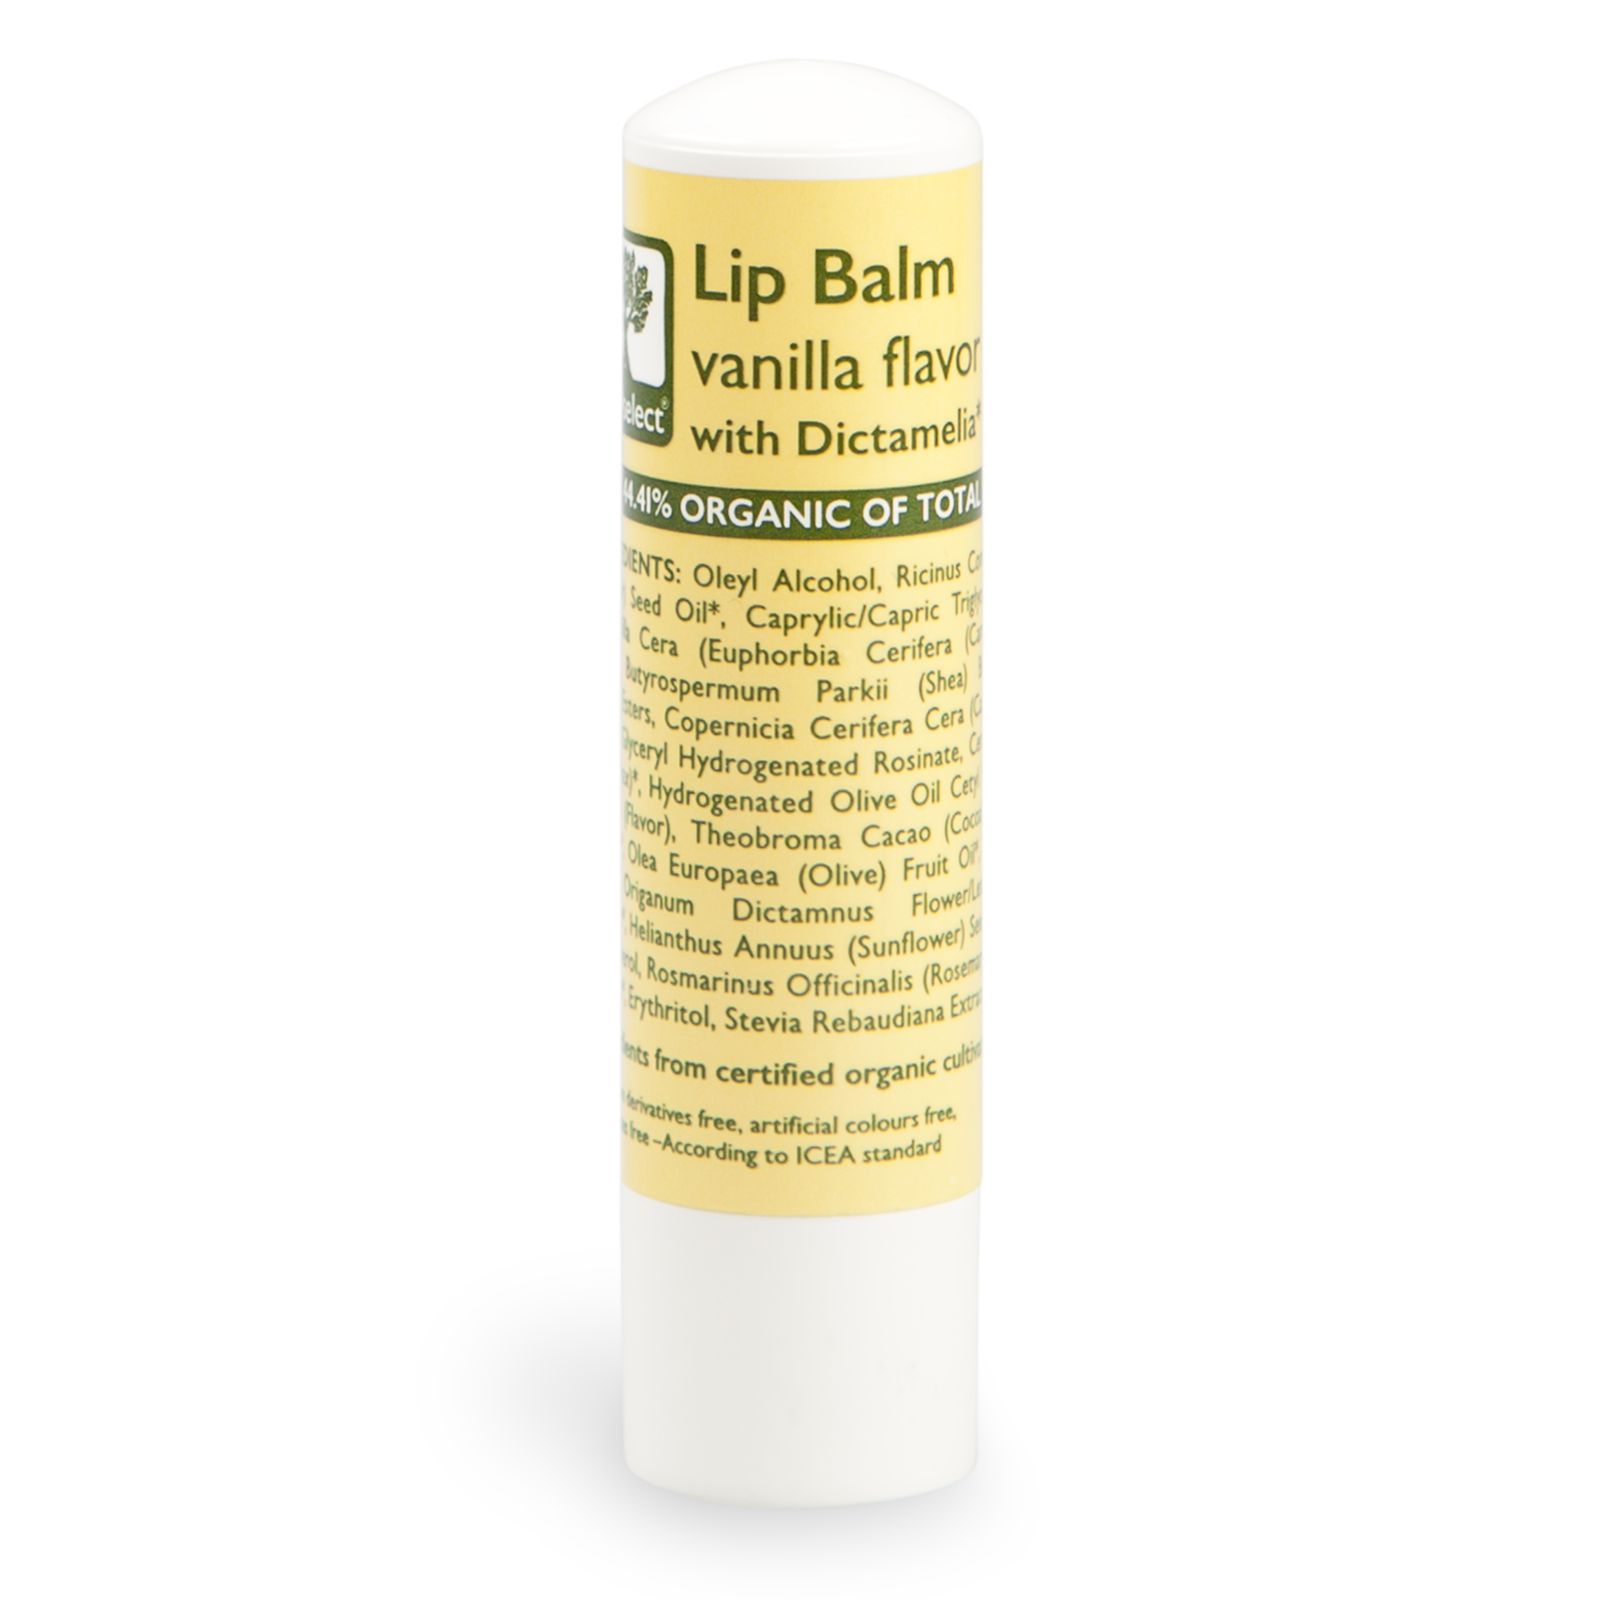 Bioselect Lip Balm vanilla flavor